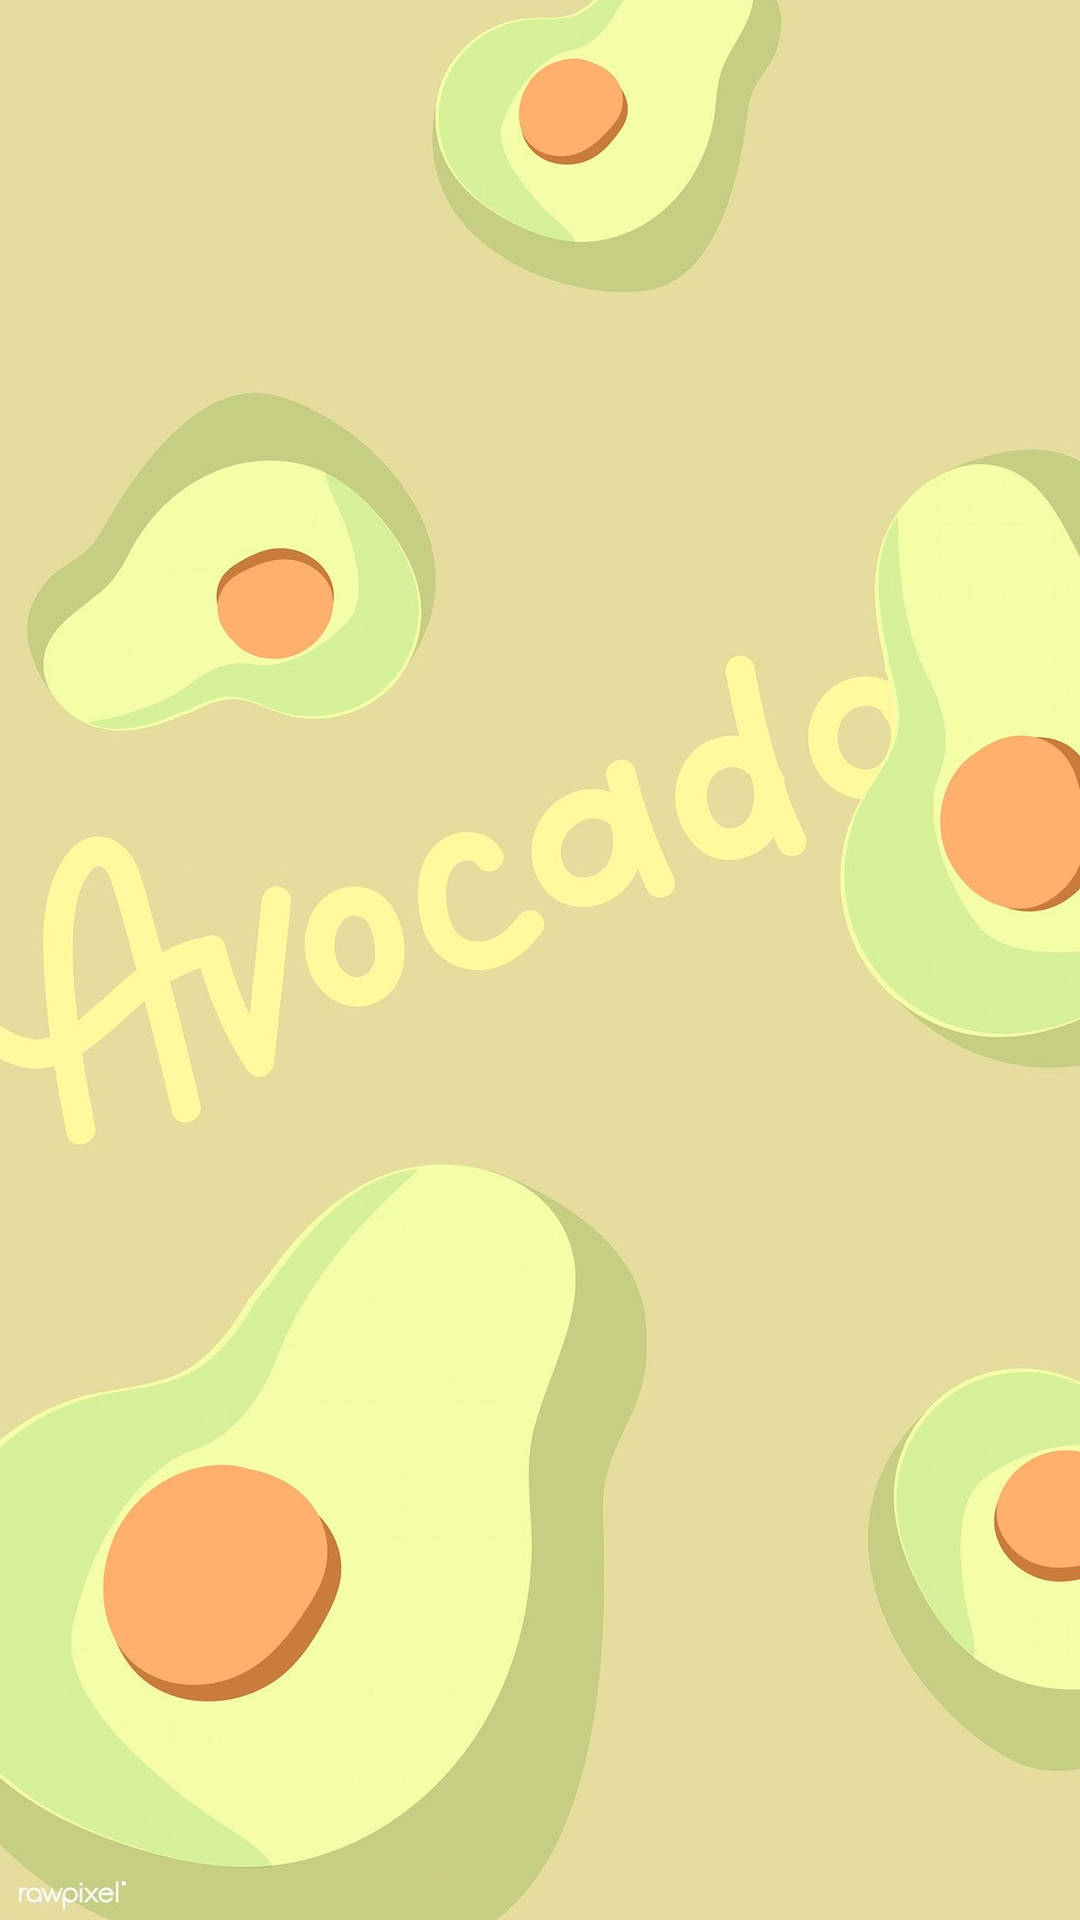 Cute Avocado Text